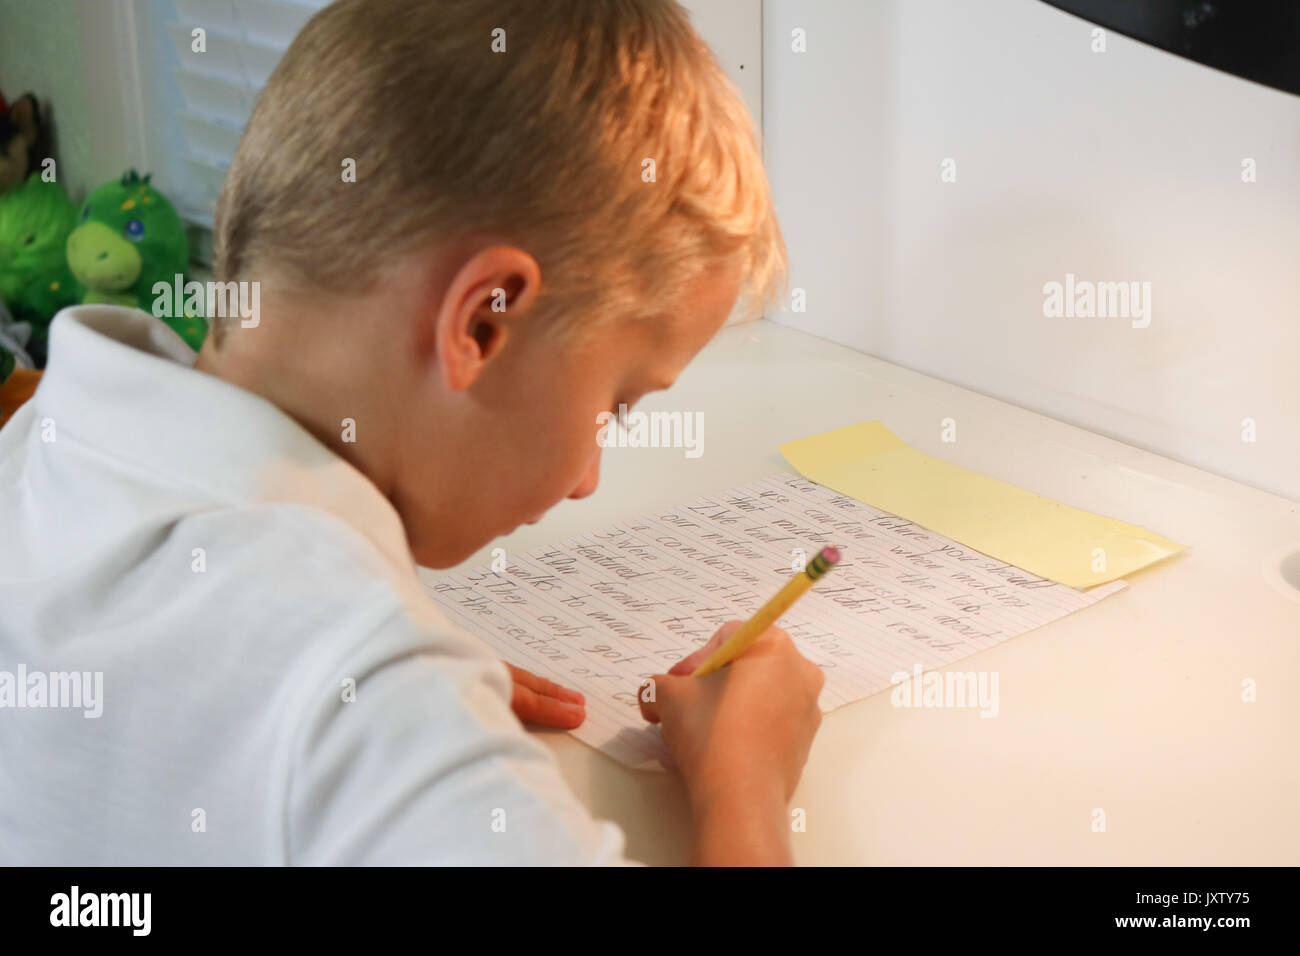 Close up portrait of a young boy doing homework écrit dans selective focus Banque D'Images